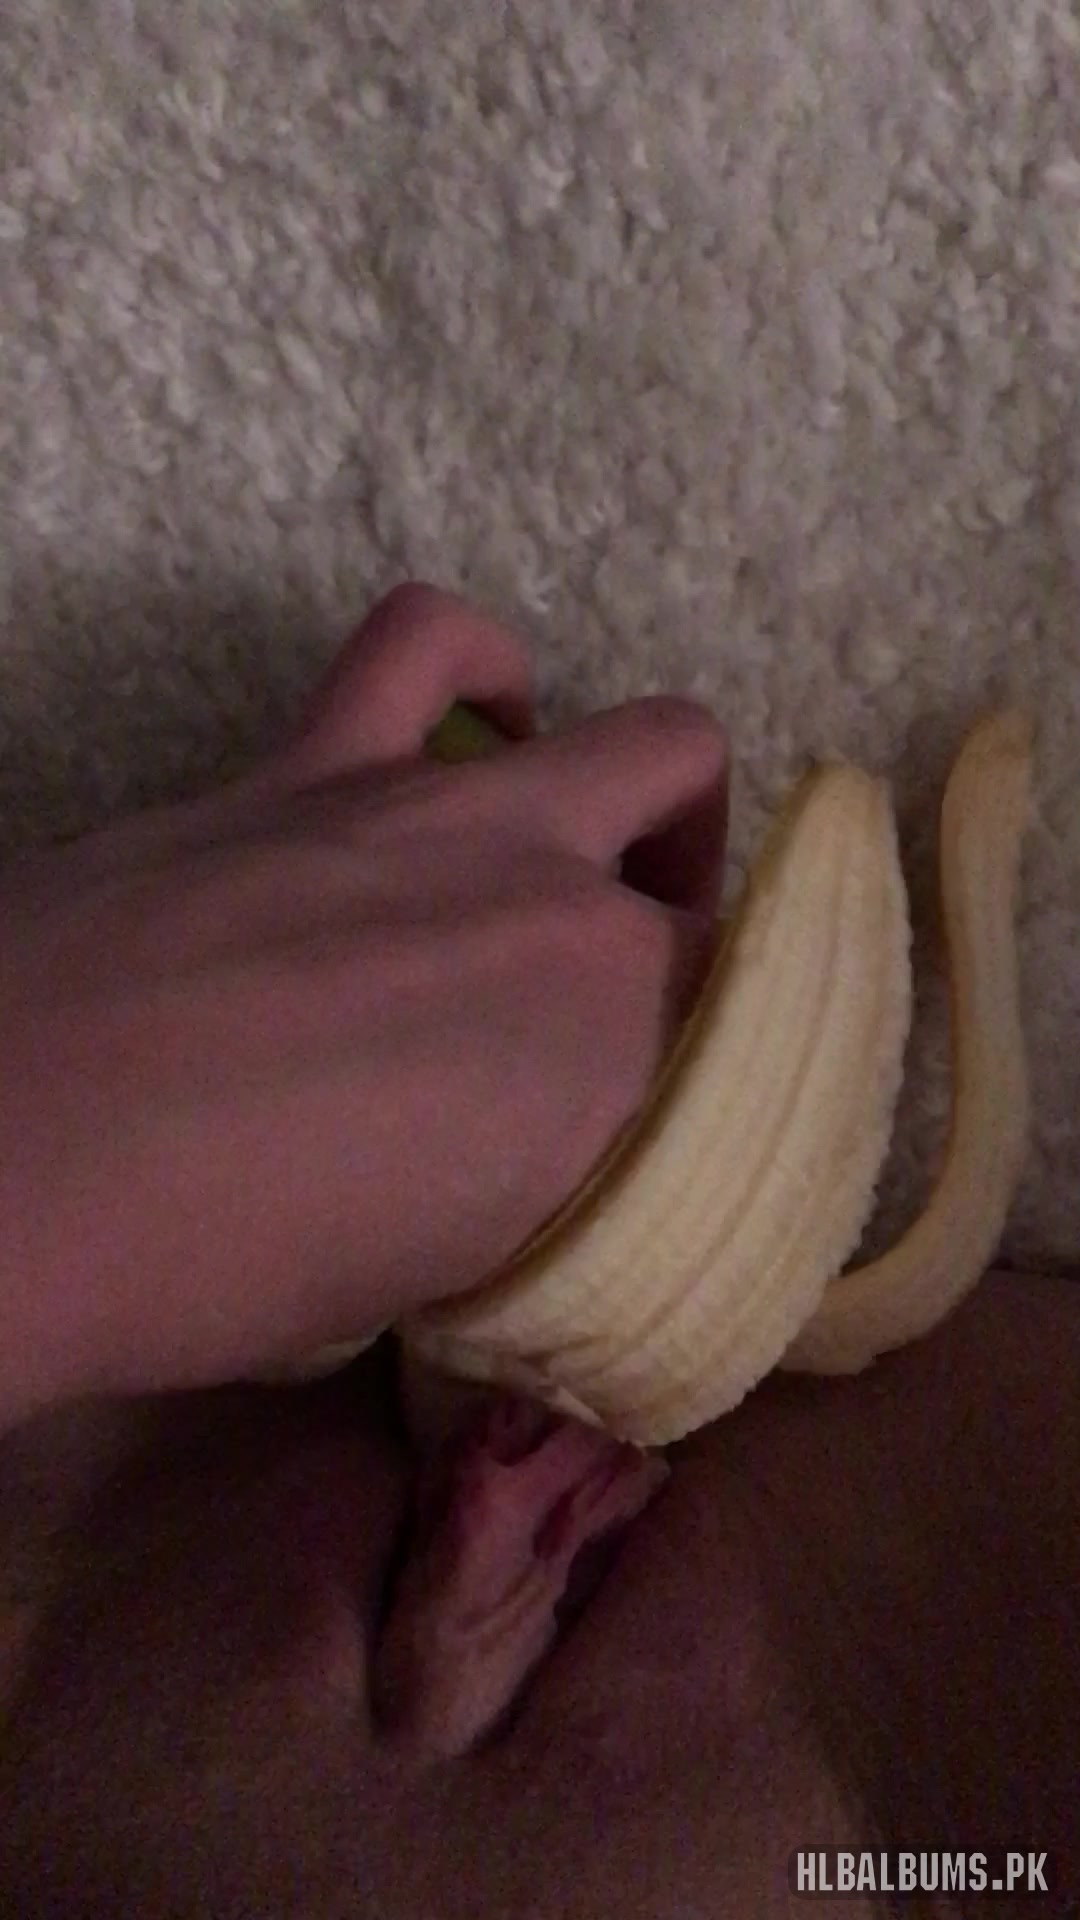 She masturbated with a banana 1